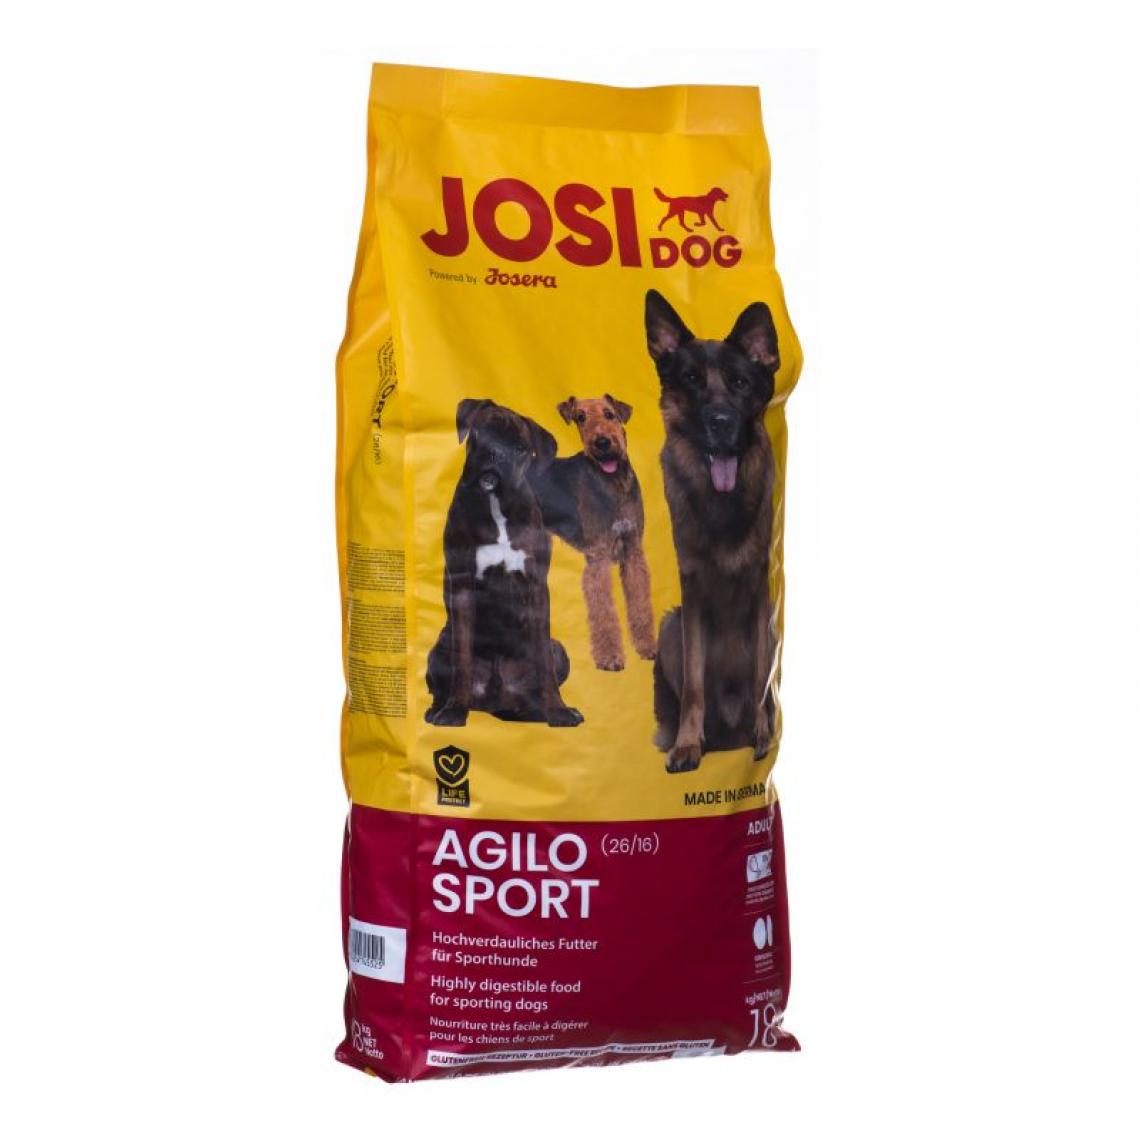 Josera - Josera JosiDog Agilo Sport 18 kg - Croquettes pour chien